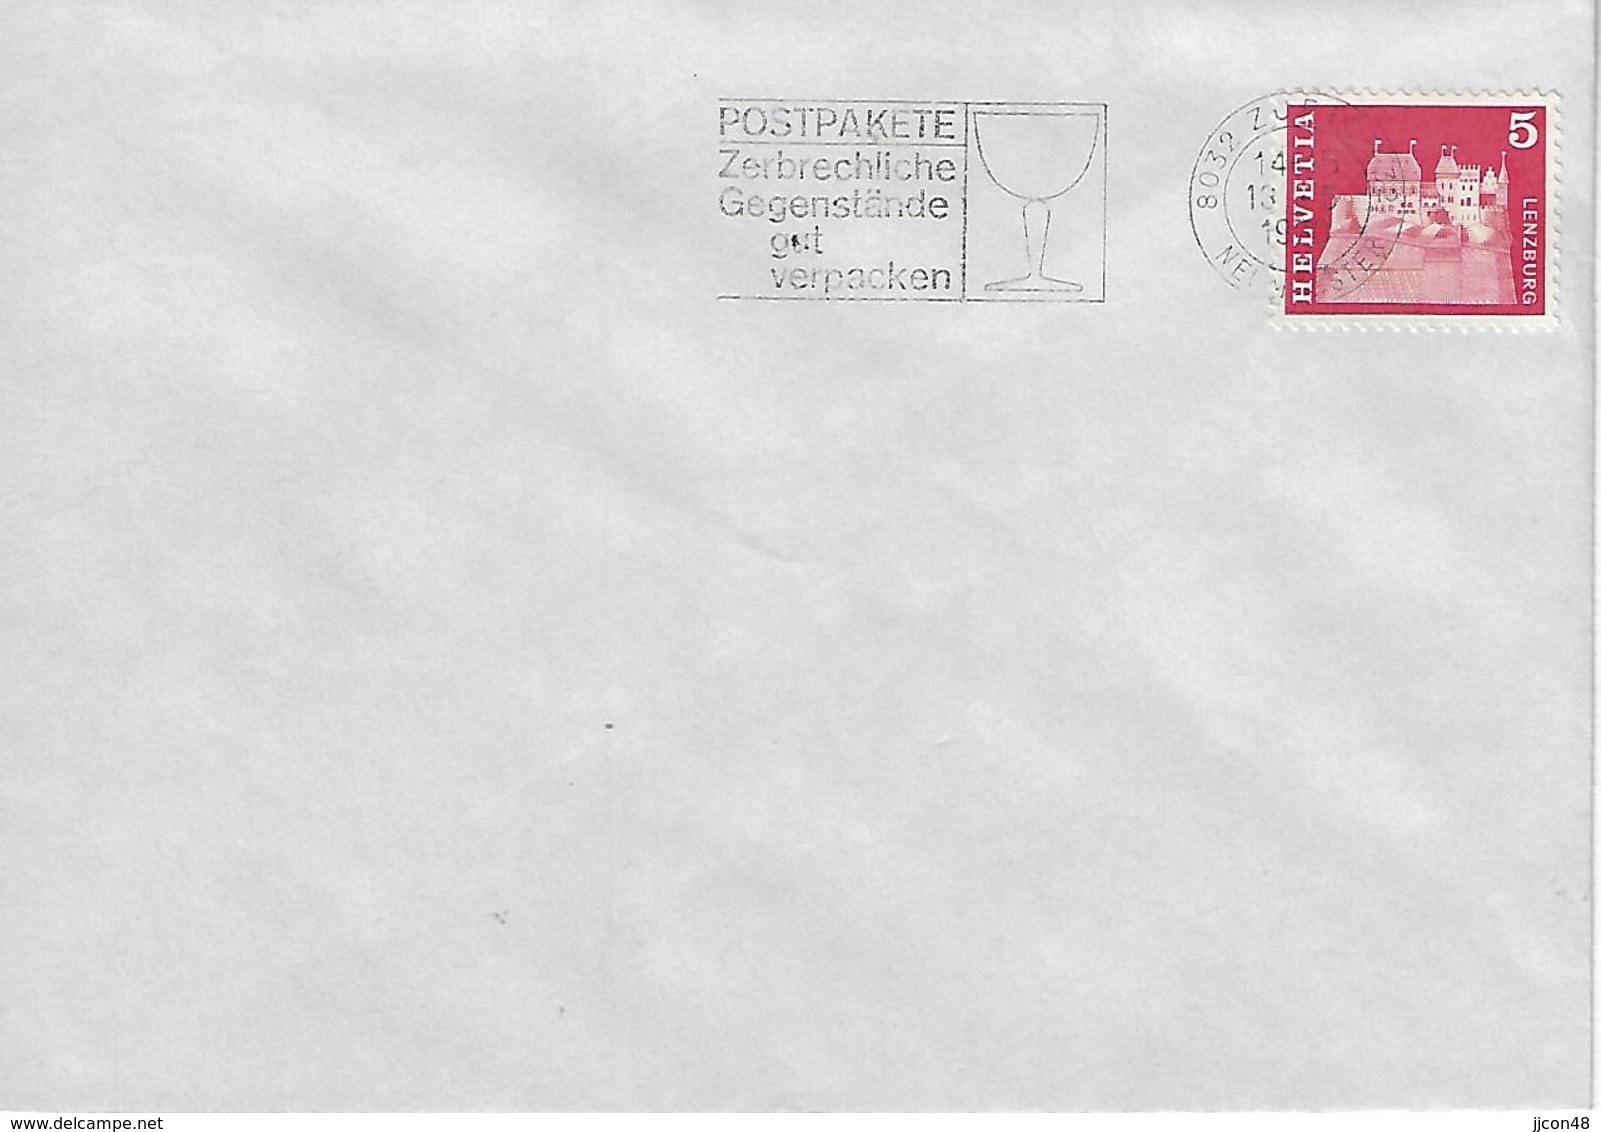 Switzerland 1970  ZURICH  13.5.70  Mi.878 - Postmark Collection